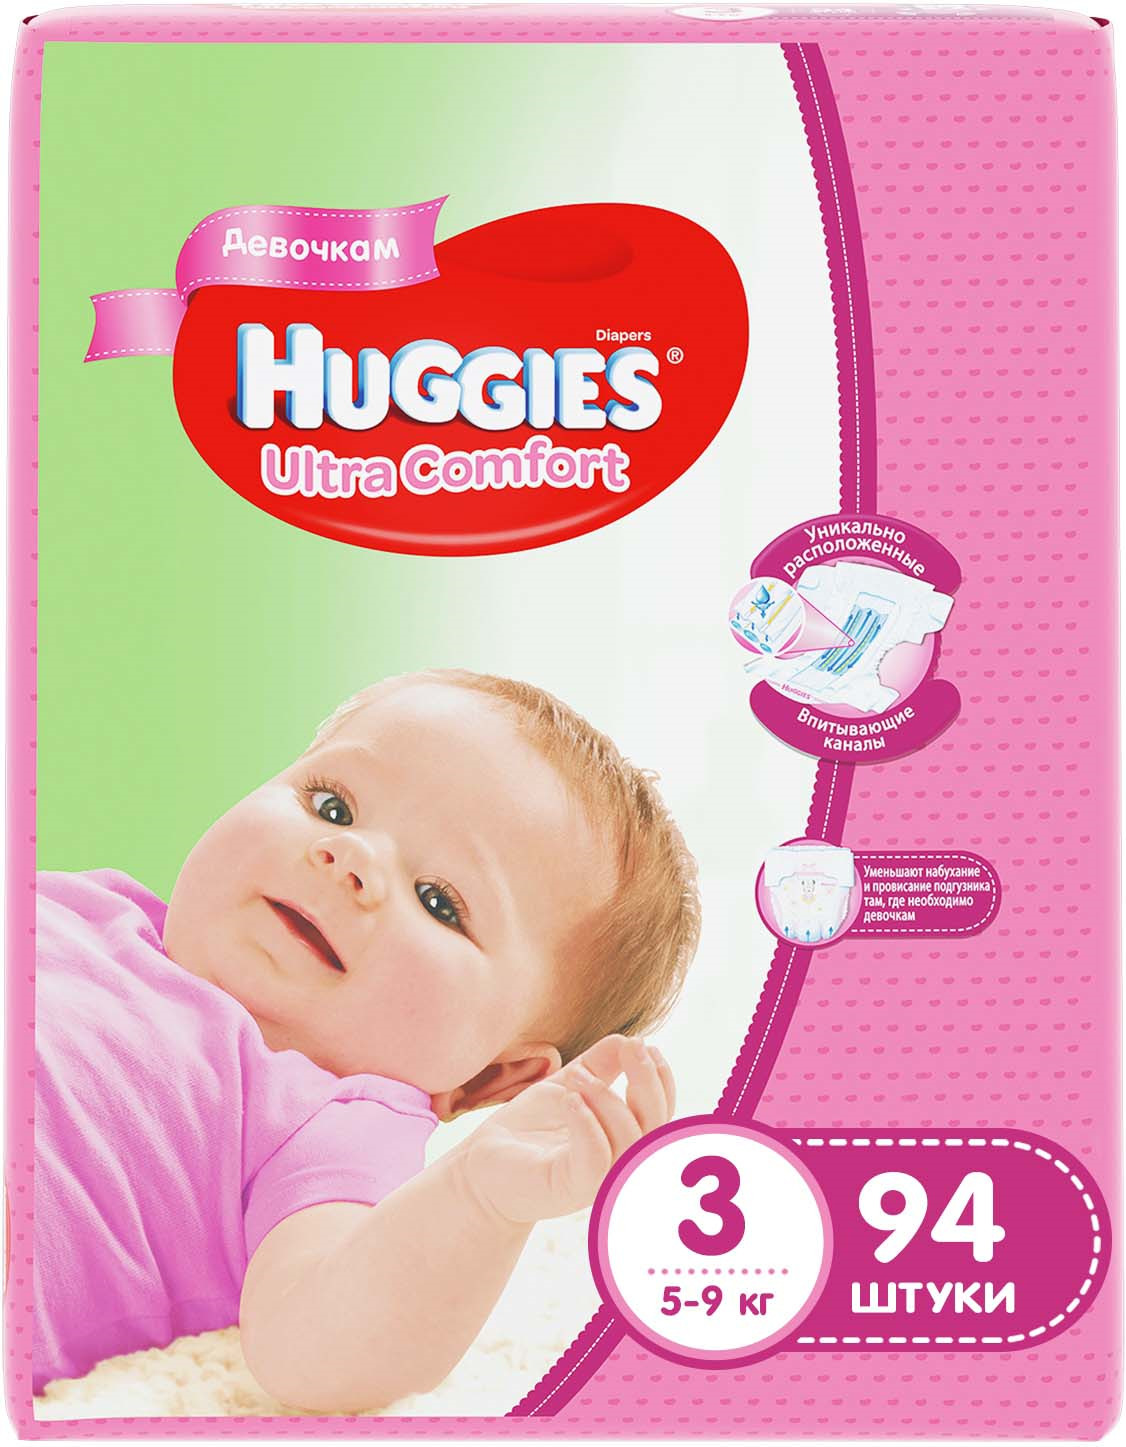 фото Huggies Подгузники для девочек Ultra Comfort 5-9 кг (размер 3) 94 шт